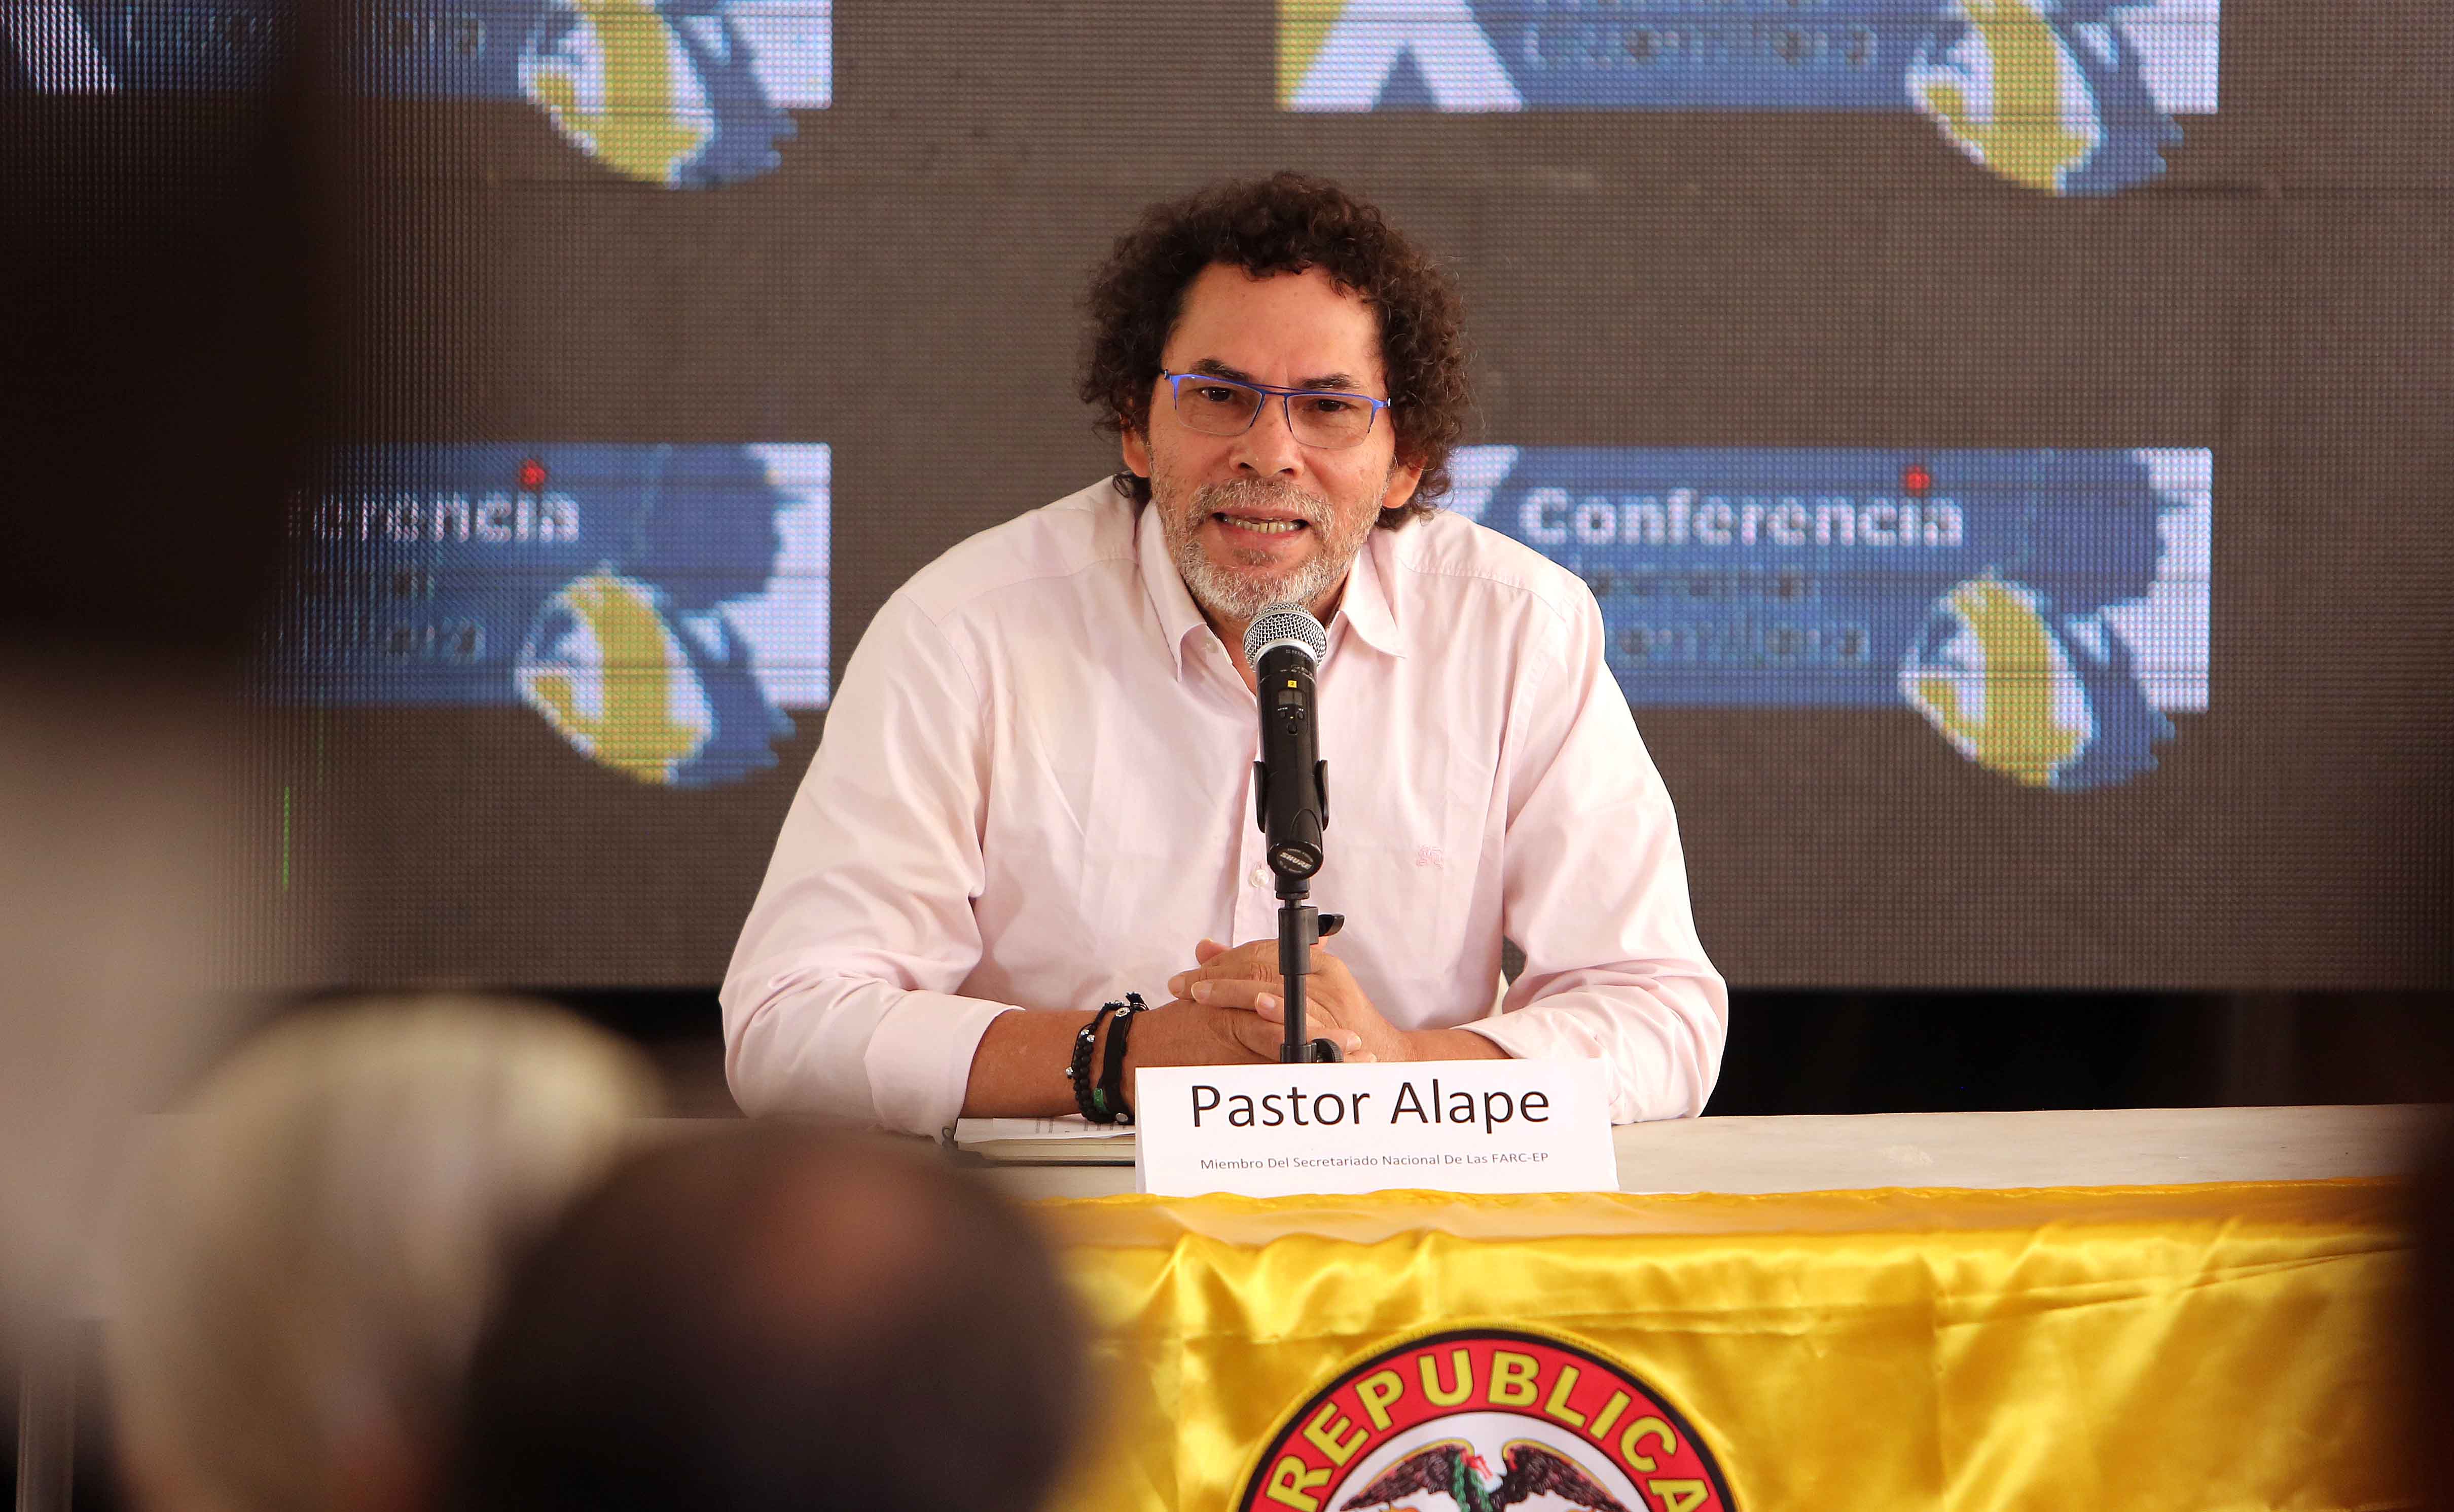 La X Conferencia Nacional de las FARC-EP se celebra hasta el 23 de septiembre.